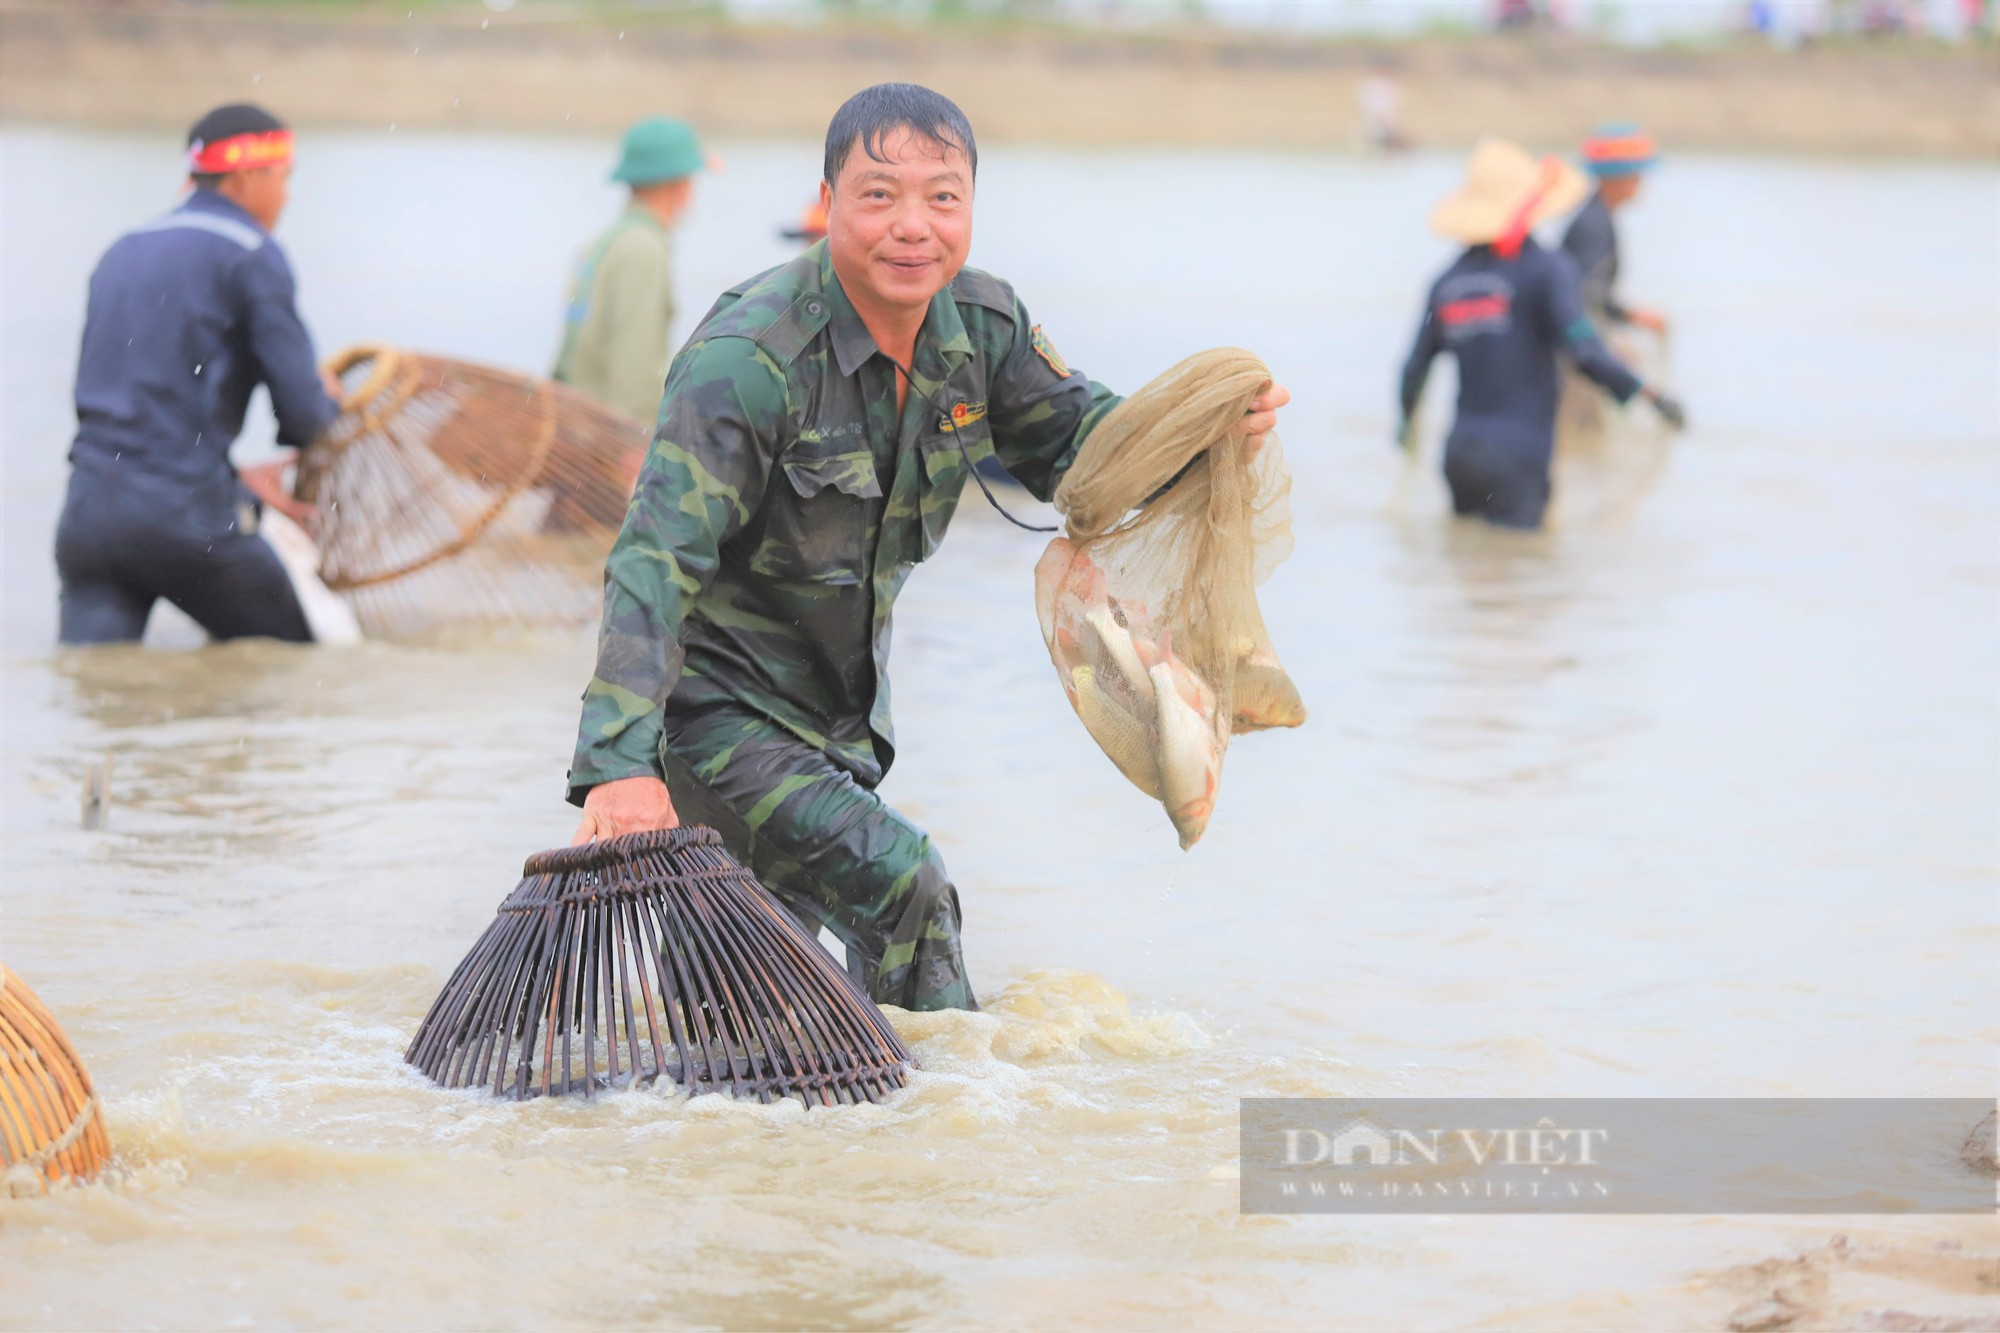 Hà Tĩnh: Hàng nghìn người dân reo hò, lội bùn tham gia Lễ hội bắt cá truyền thống xã Thạch Hưng - Ảnh 3.